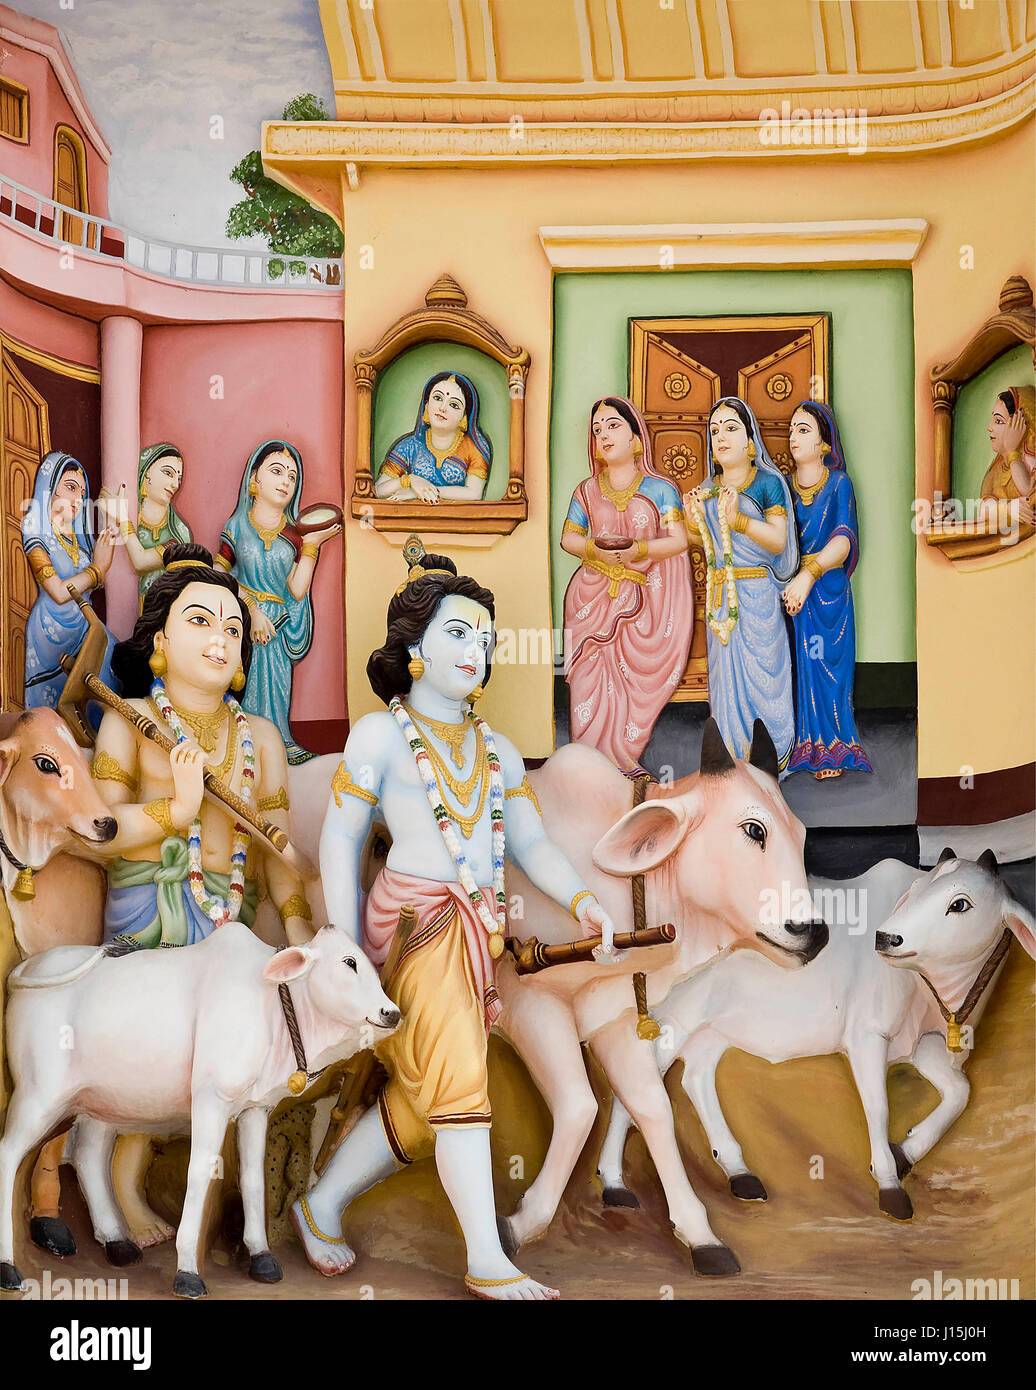 Krishna avec des vaches peignant sur le mur, Uttar Pradesh, Inde, Asie Banque D'Images